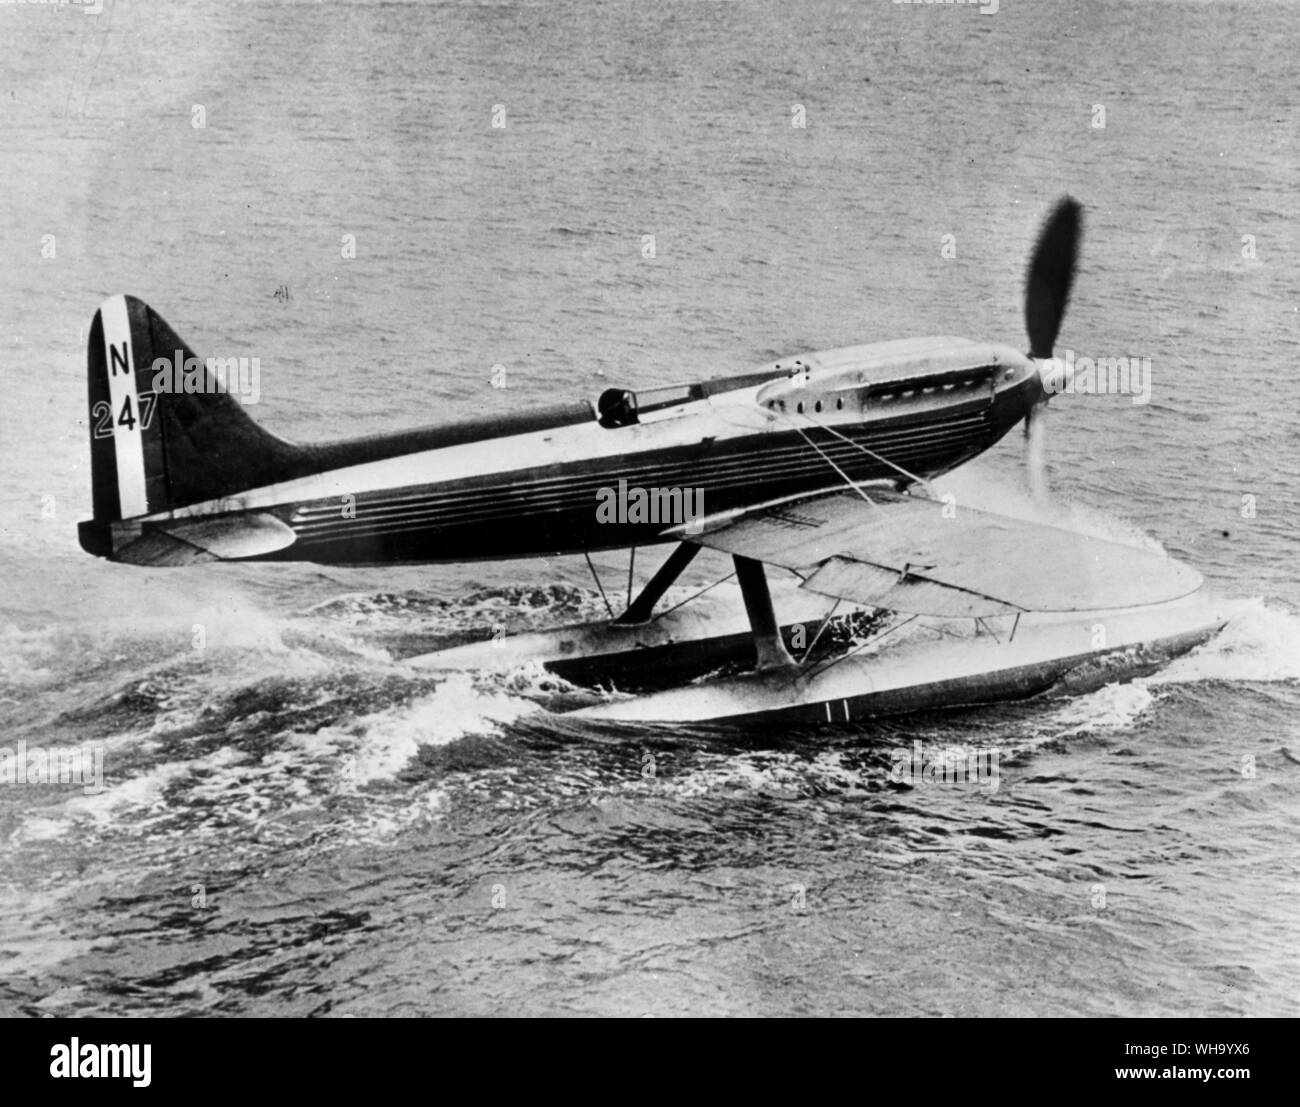 WW2/ Battle of Britain: Sea plane Stock Photo